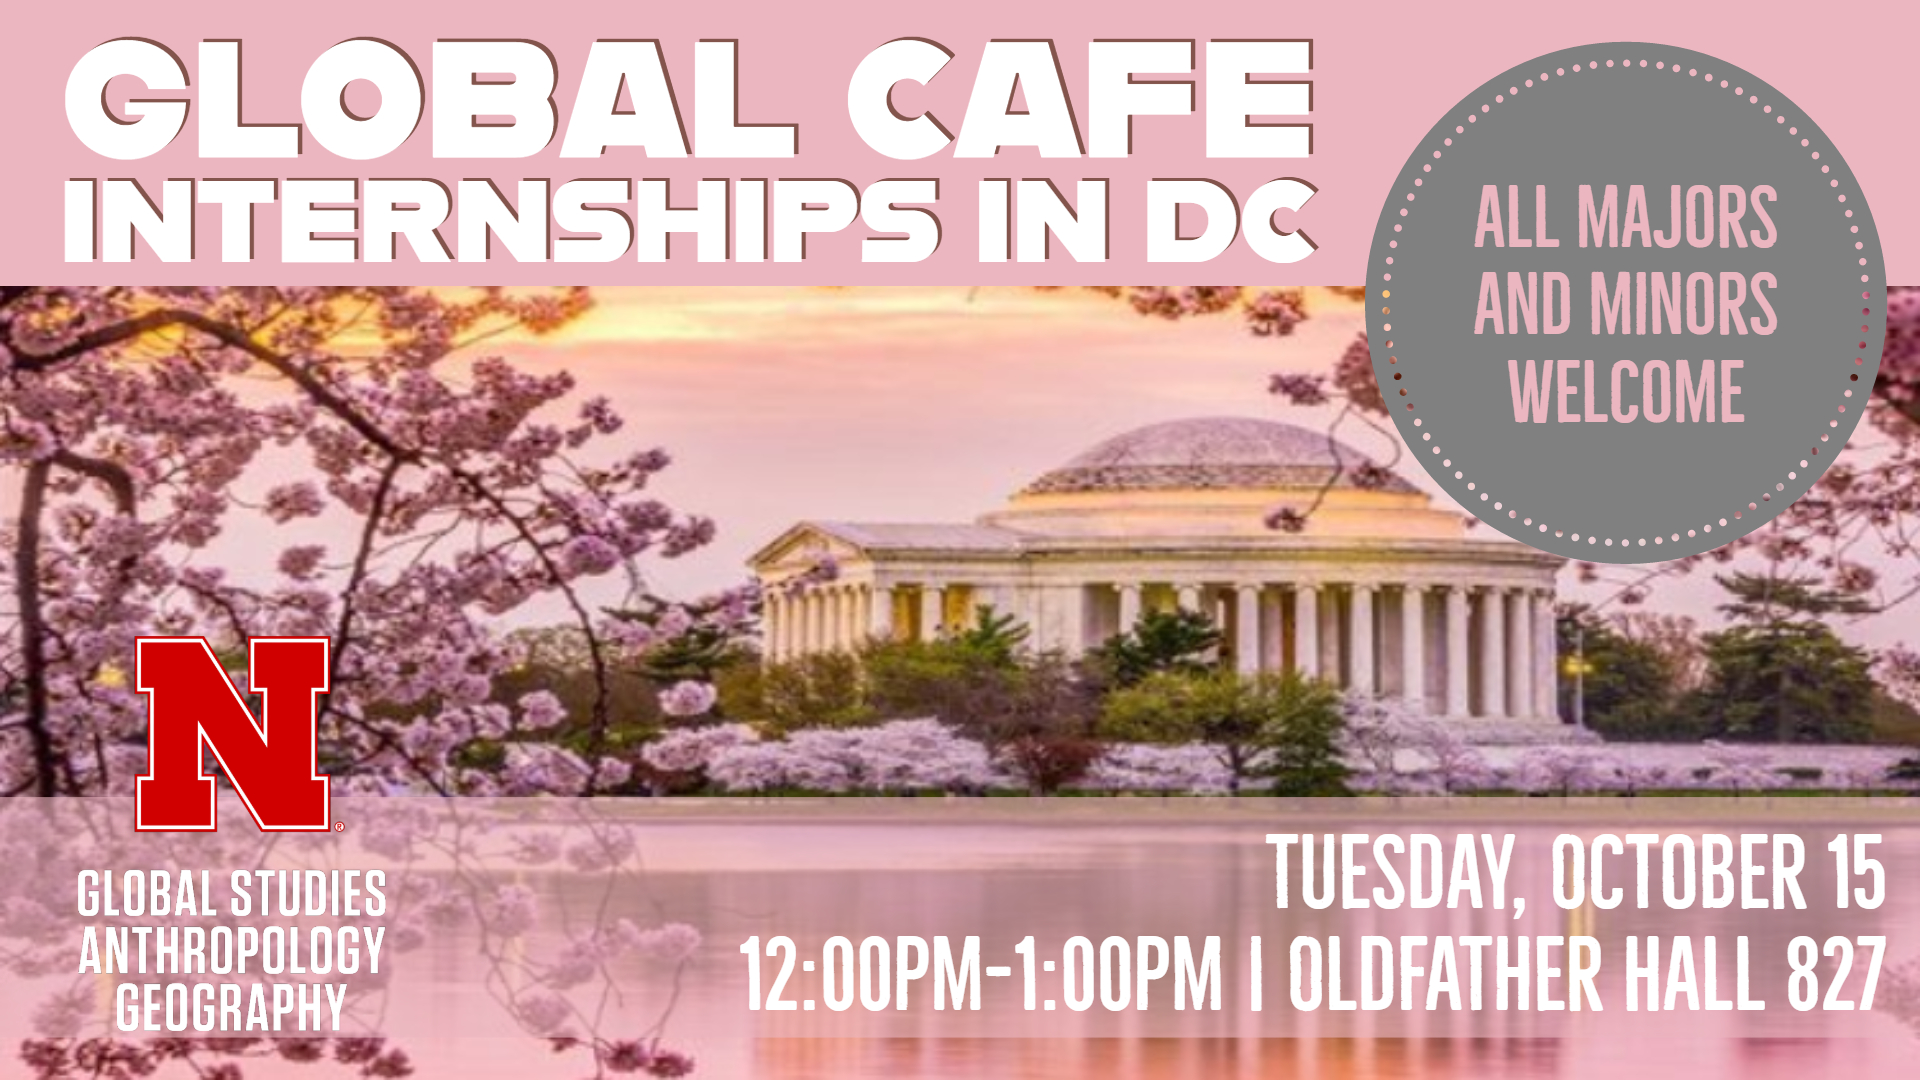 Global Cafe Internships in DC Announce University of NebraskaLincoln